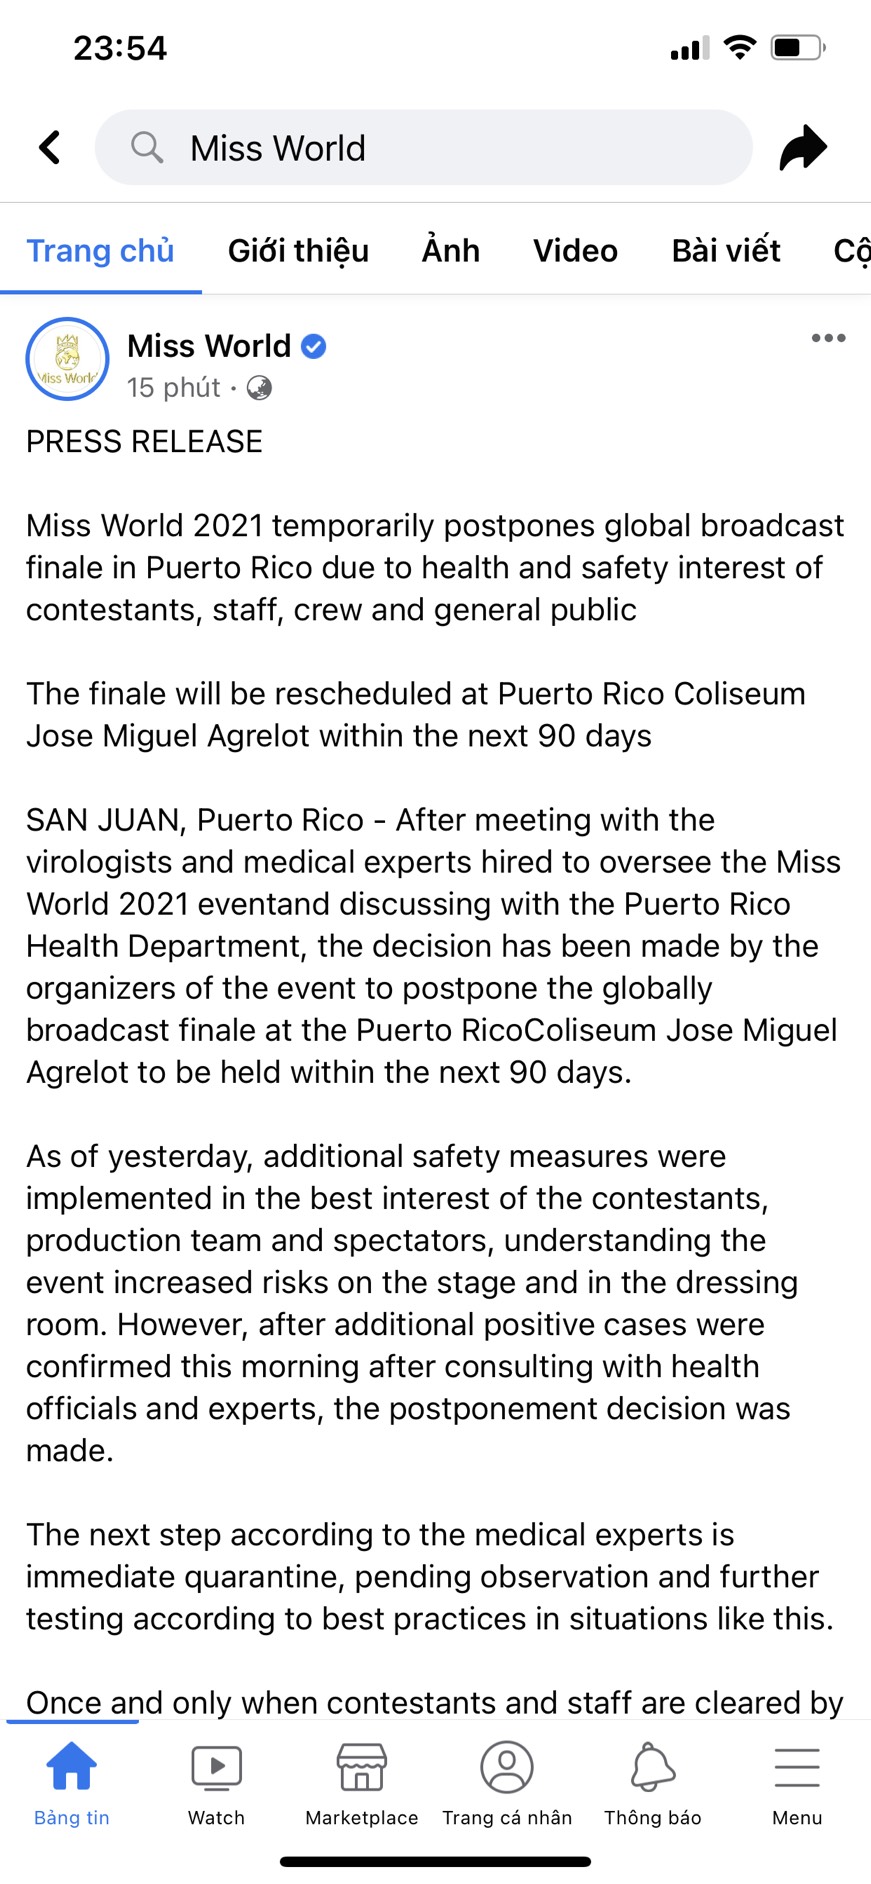 Bài đăng thông báo hoãn Chung kết Miss World 2021 ngay sát giờ G khiến dân tình xôn xao